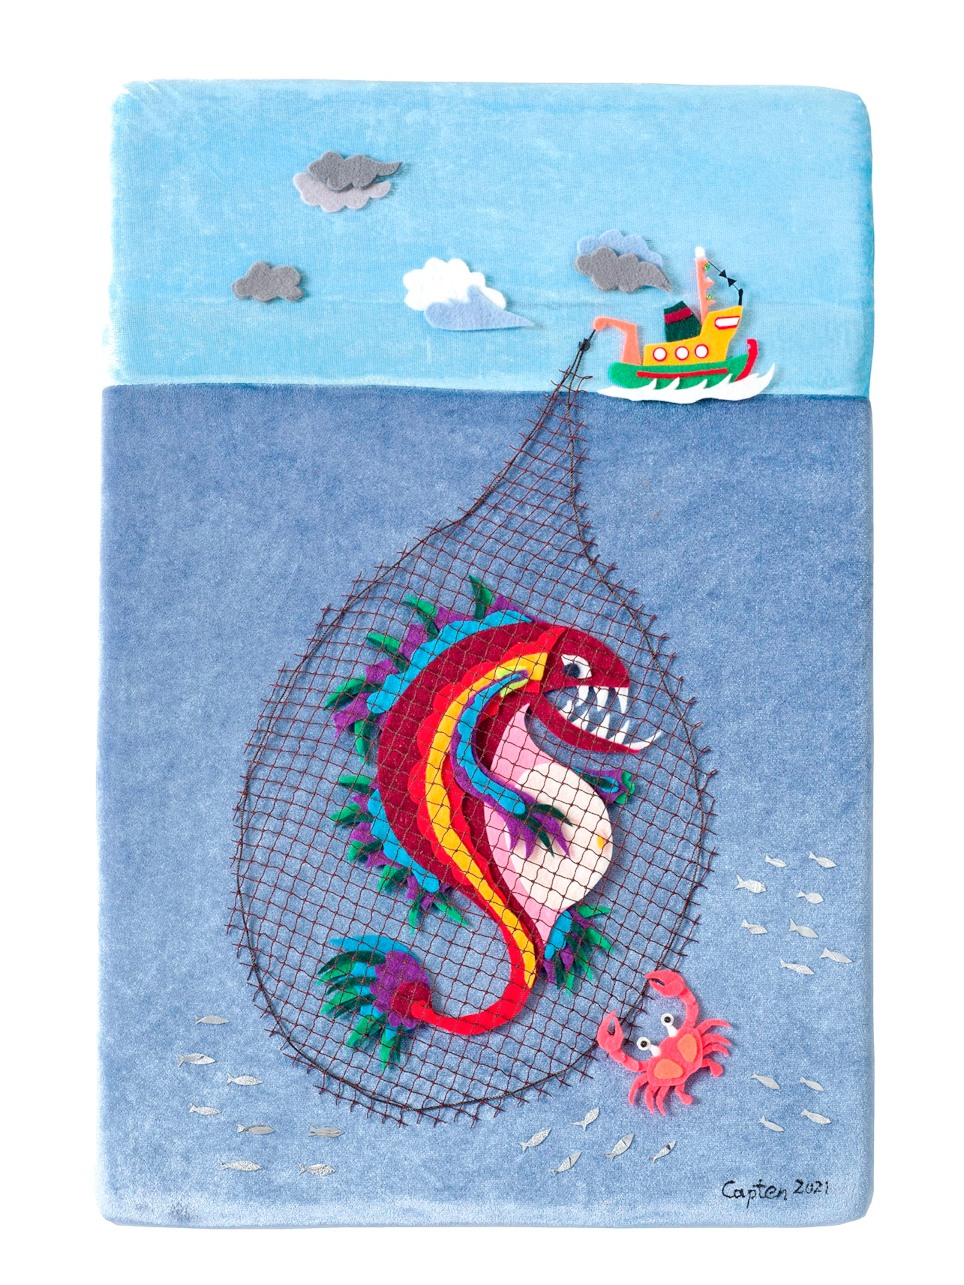 Η μεγάλη ψαριά του Κάπταν Νίκου, μεικτή τεχνική (χρωματιστές τσόχες-fetrin σε βελούδο), 39 x 39 cm, 2021